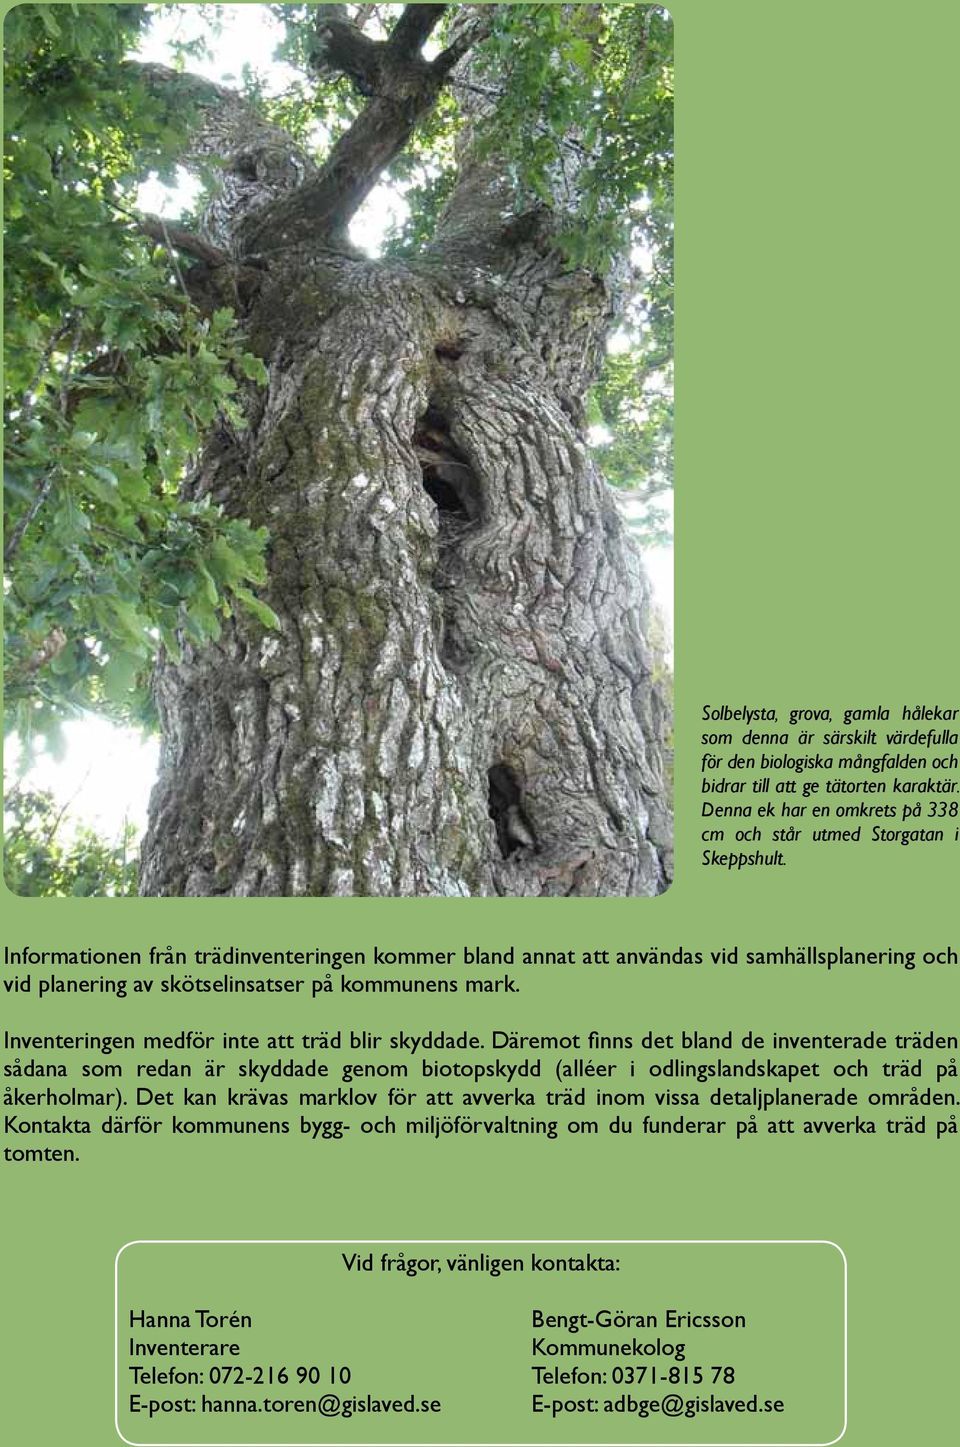 Informationen från trädinventeringen kommer bland annat att användas vid samhällsplanering och vid planering av skötselinsatser på kommunens mark. Inventeringen medför inte att träd blir skyddade.